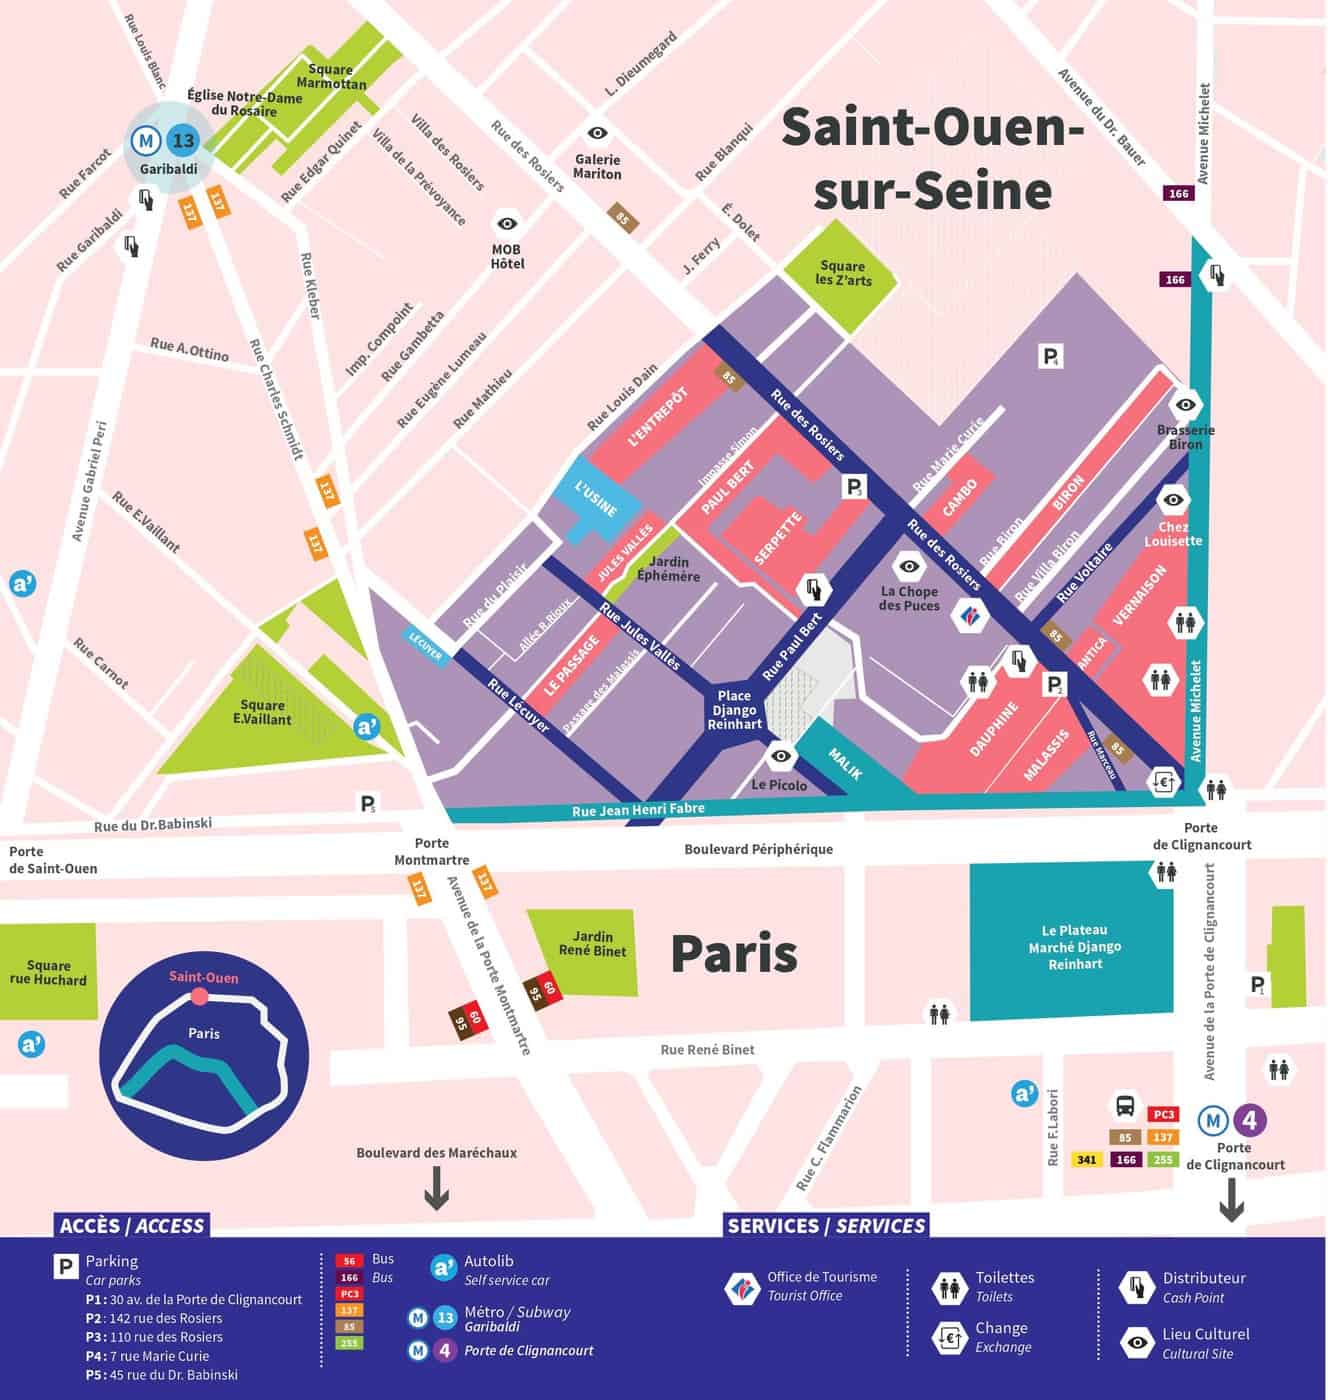 Marché aux Puces de Paris Saint-Ouen - MAP - You can't get lostDownload  or print the new plan of the antique market Les Puces de Paris -  Saint-Ouen. Good visit ! Vous